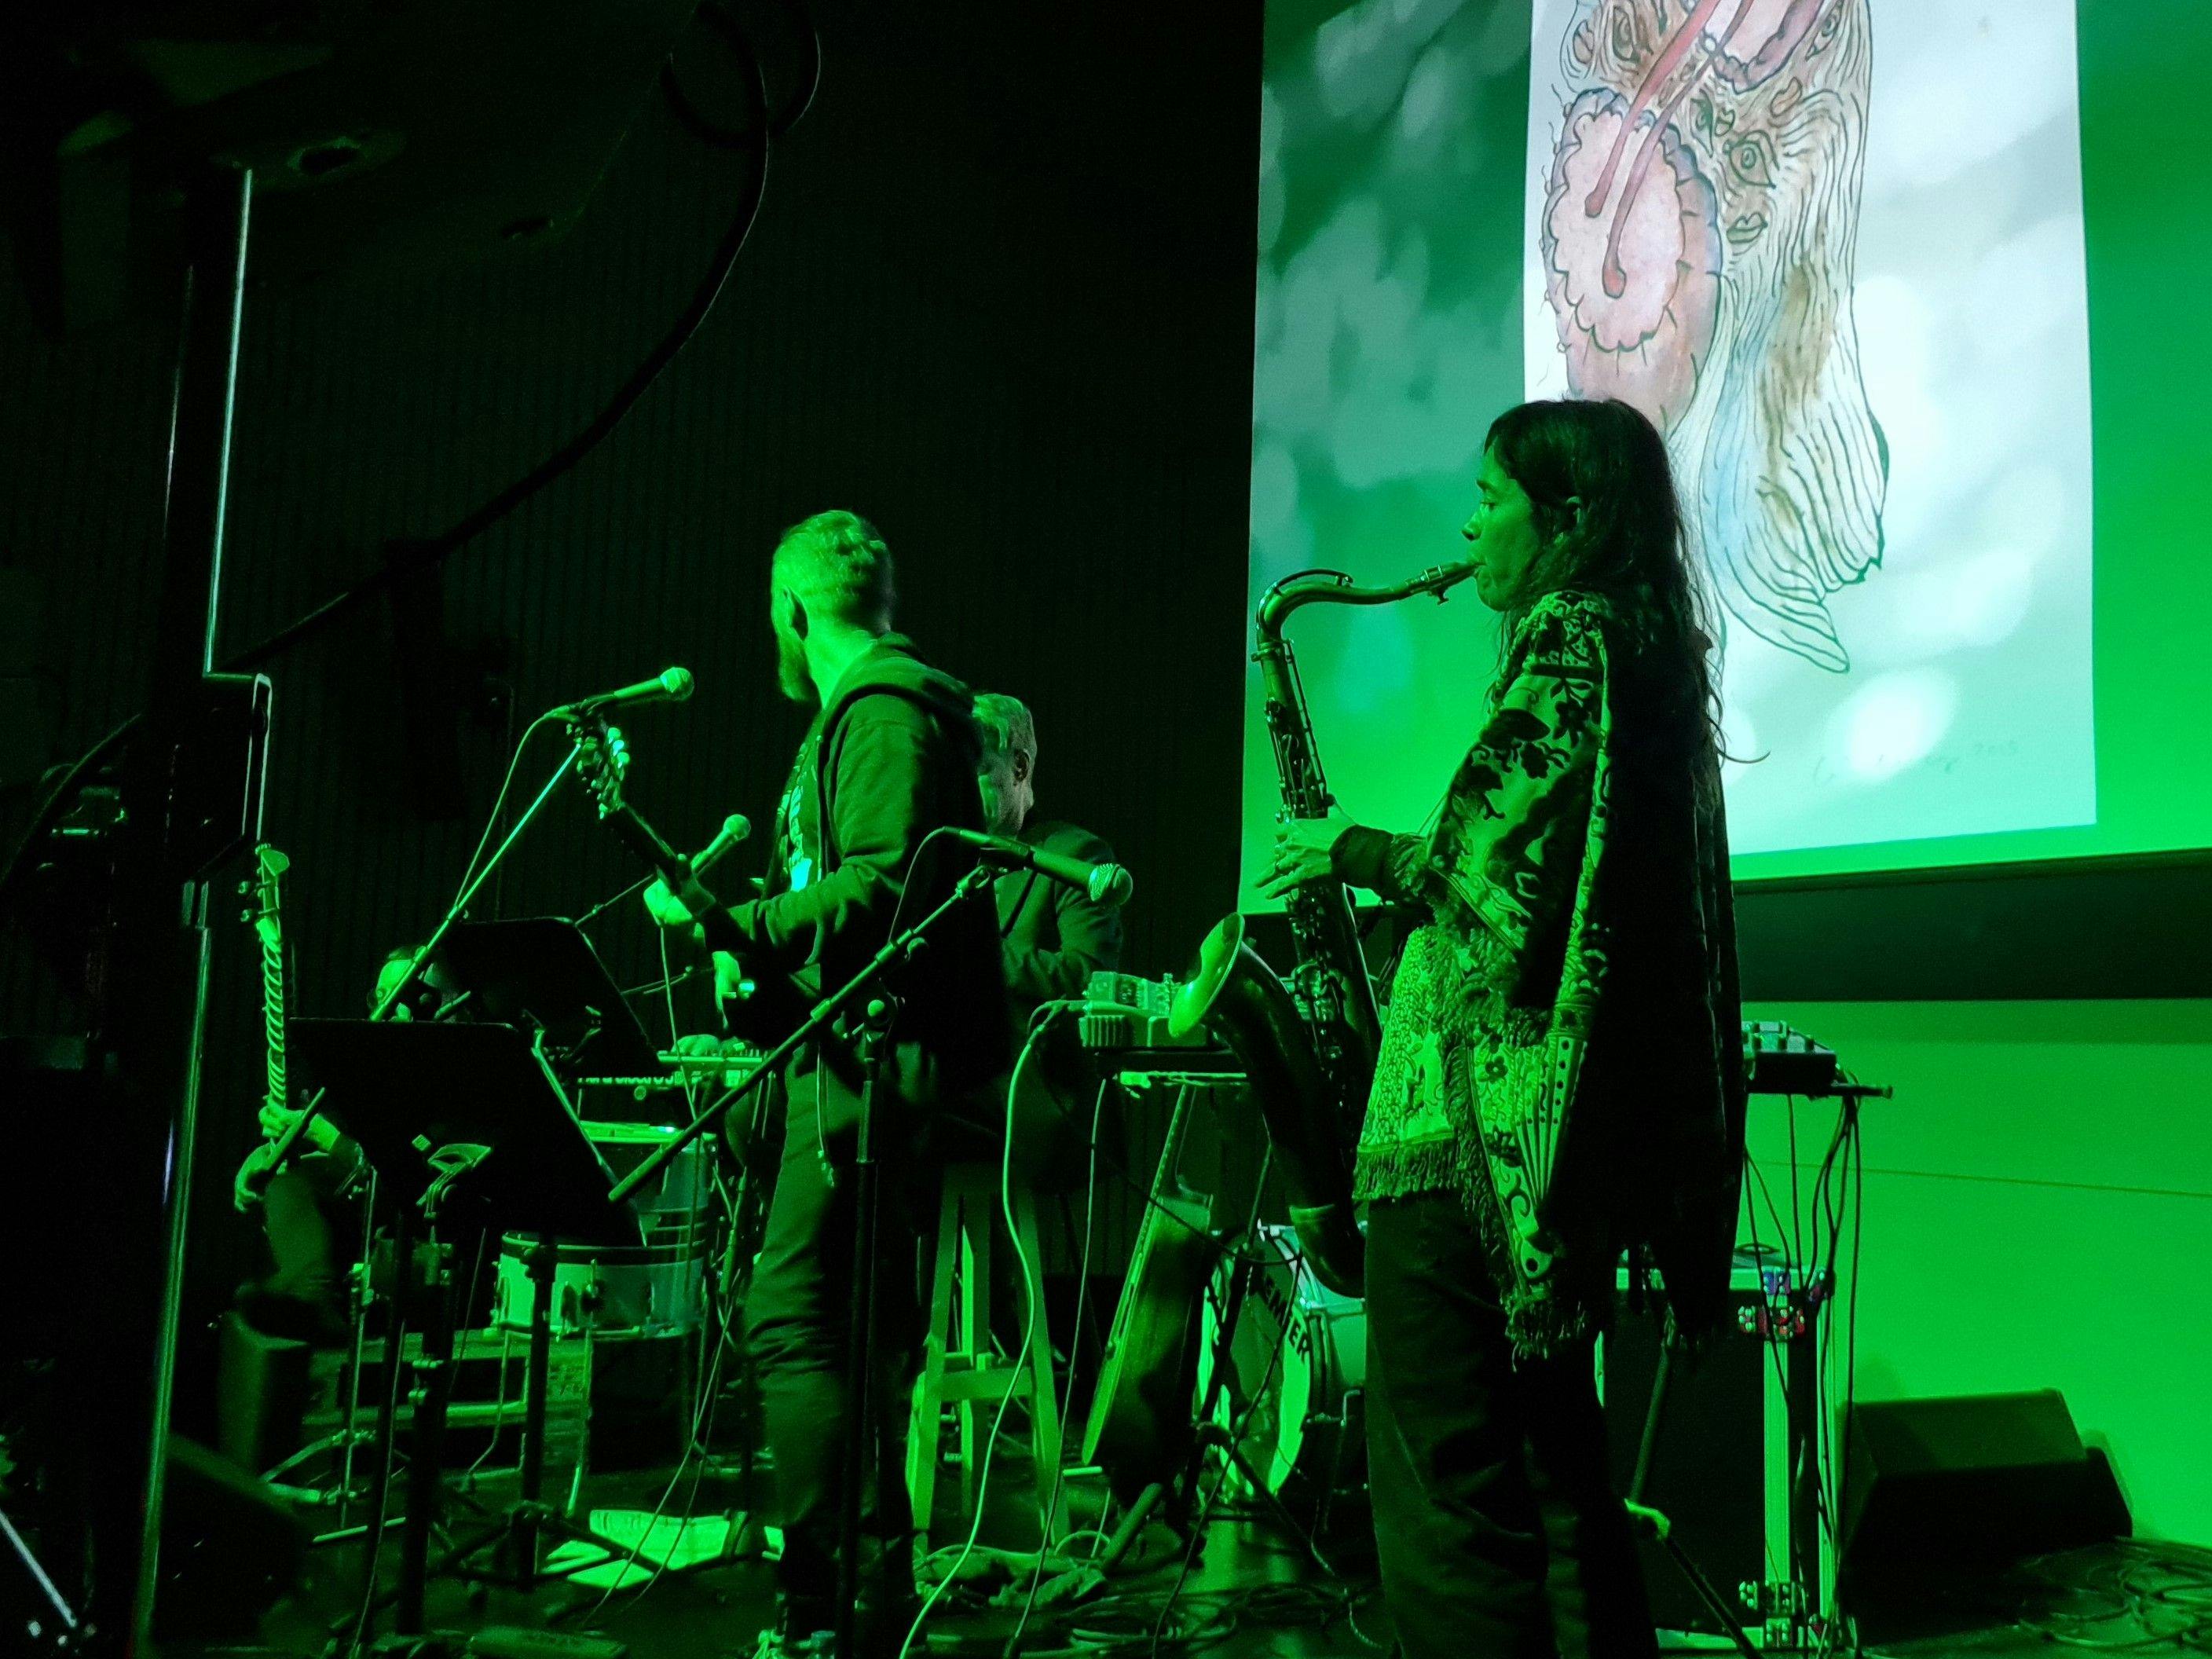 Bild på musiker på scen i grön belysning, med saxofonist i profil närmst kameran